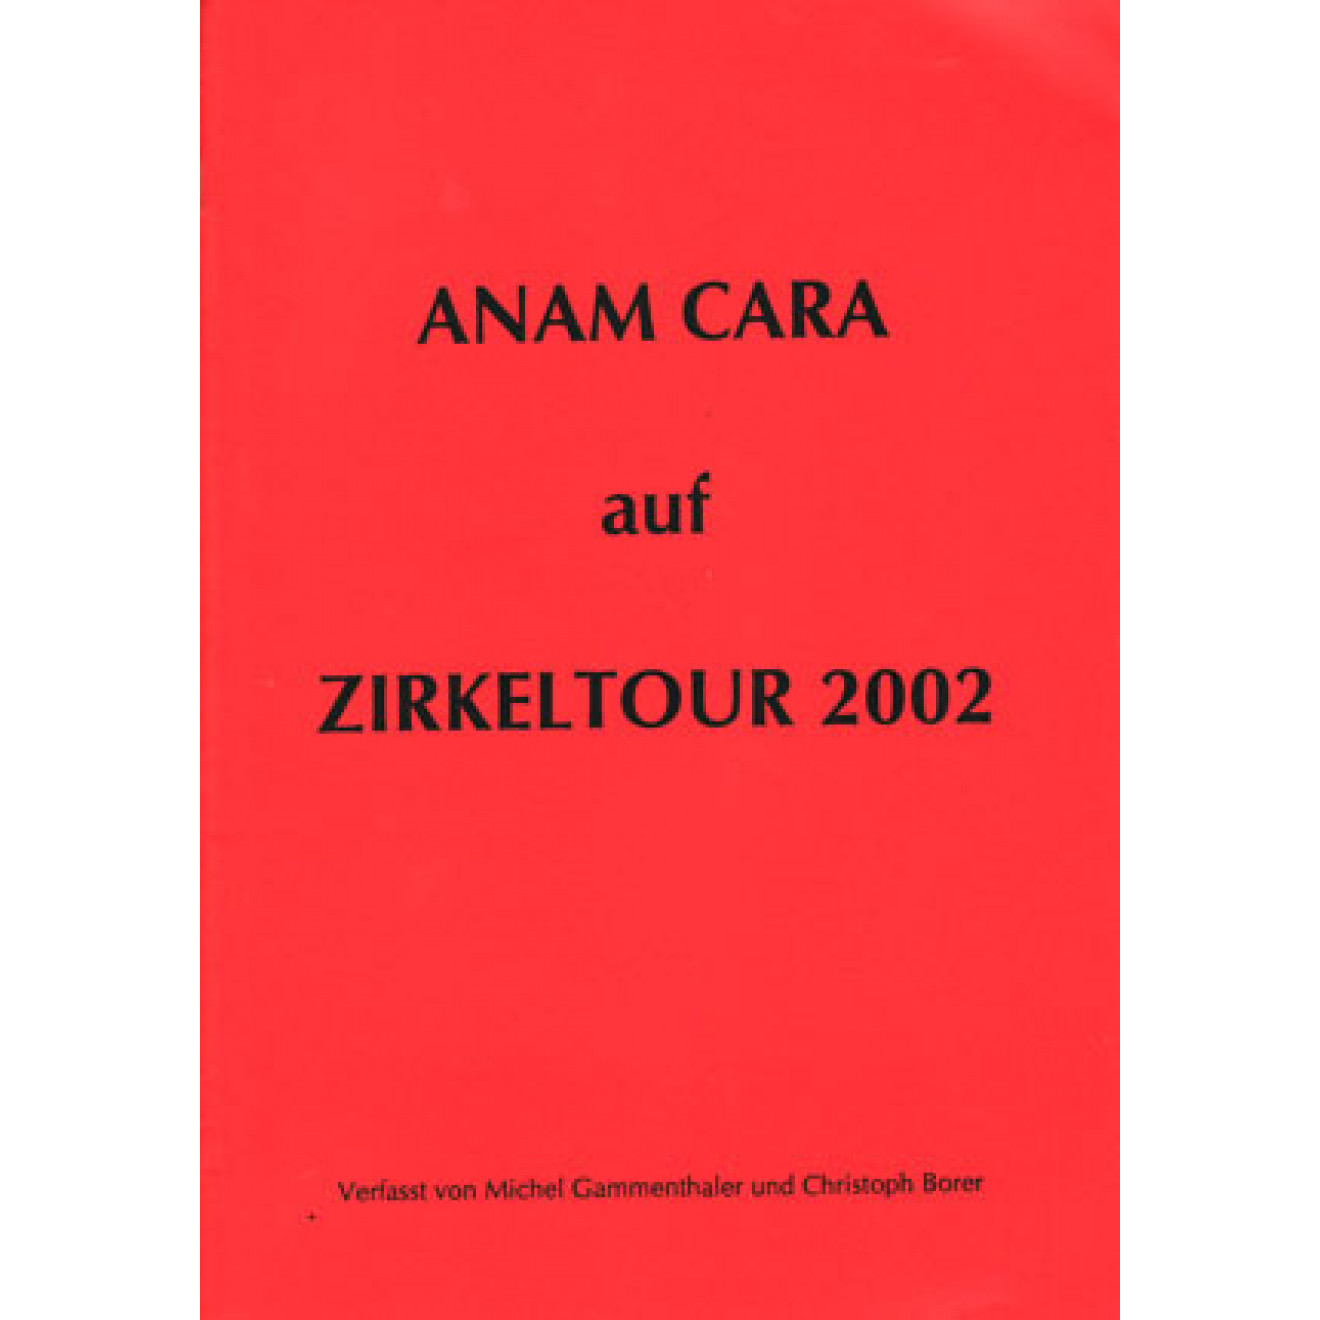 Anam Cara auf Zirkeltour 2002